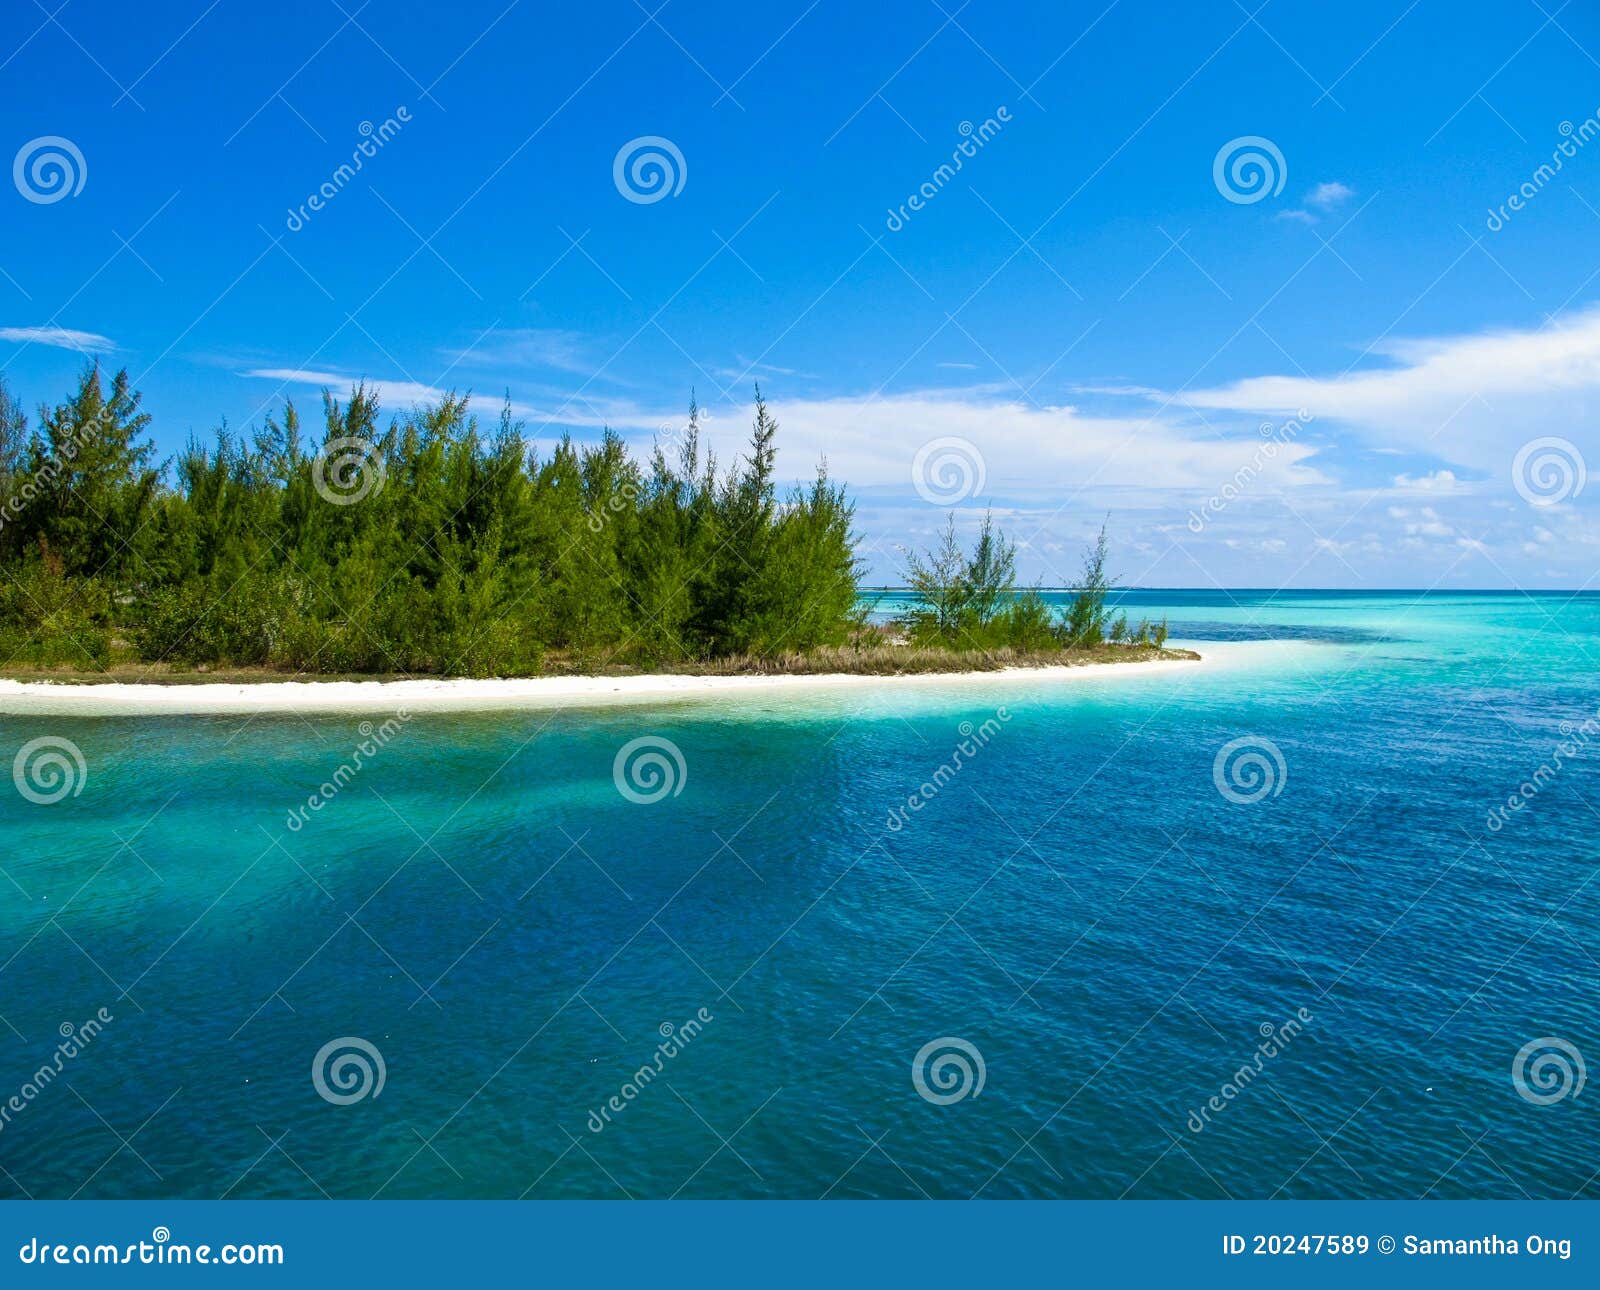 caribbean sea - playa paraiso, cayo largo, cuba